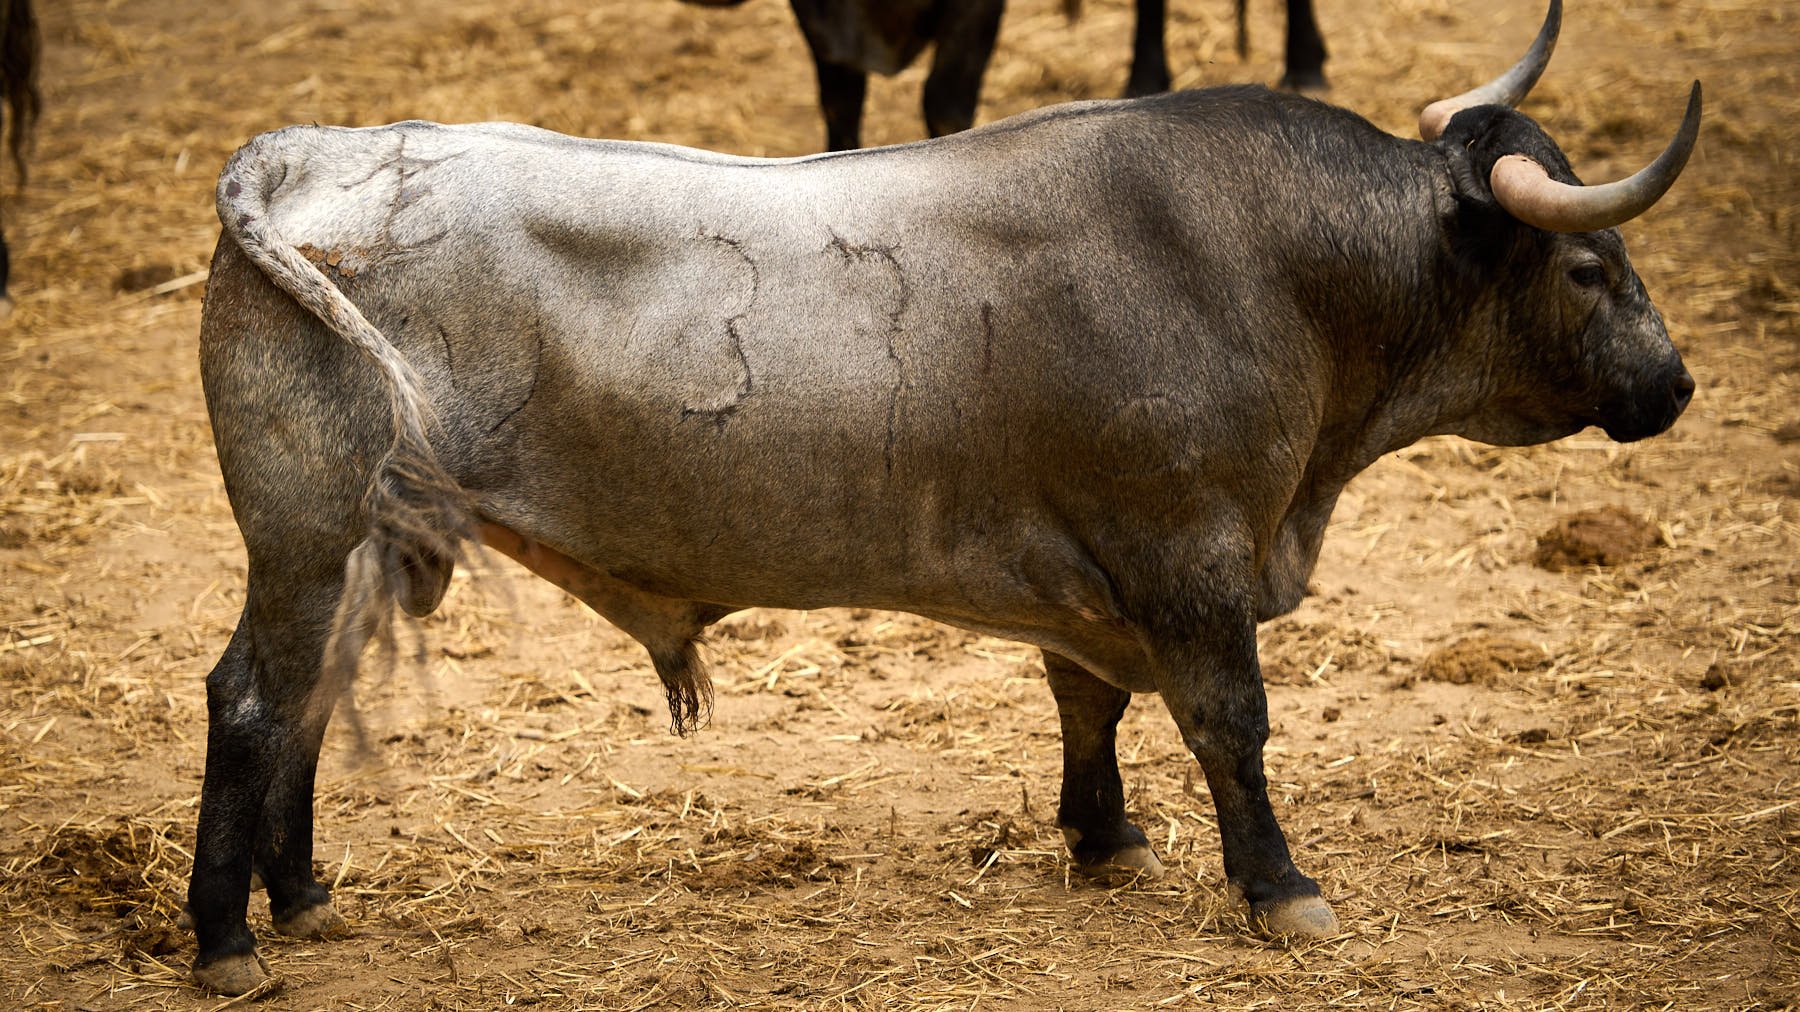 El toro 'Consejero I' (nº37) de la ganadería de José Escolar Gil (8 de julio) y de 560 kilos de peso en los corrales del Gas de Pamplona. PABLO LASAOSA